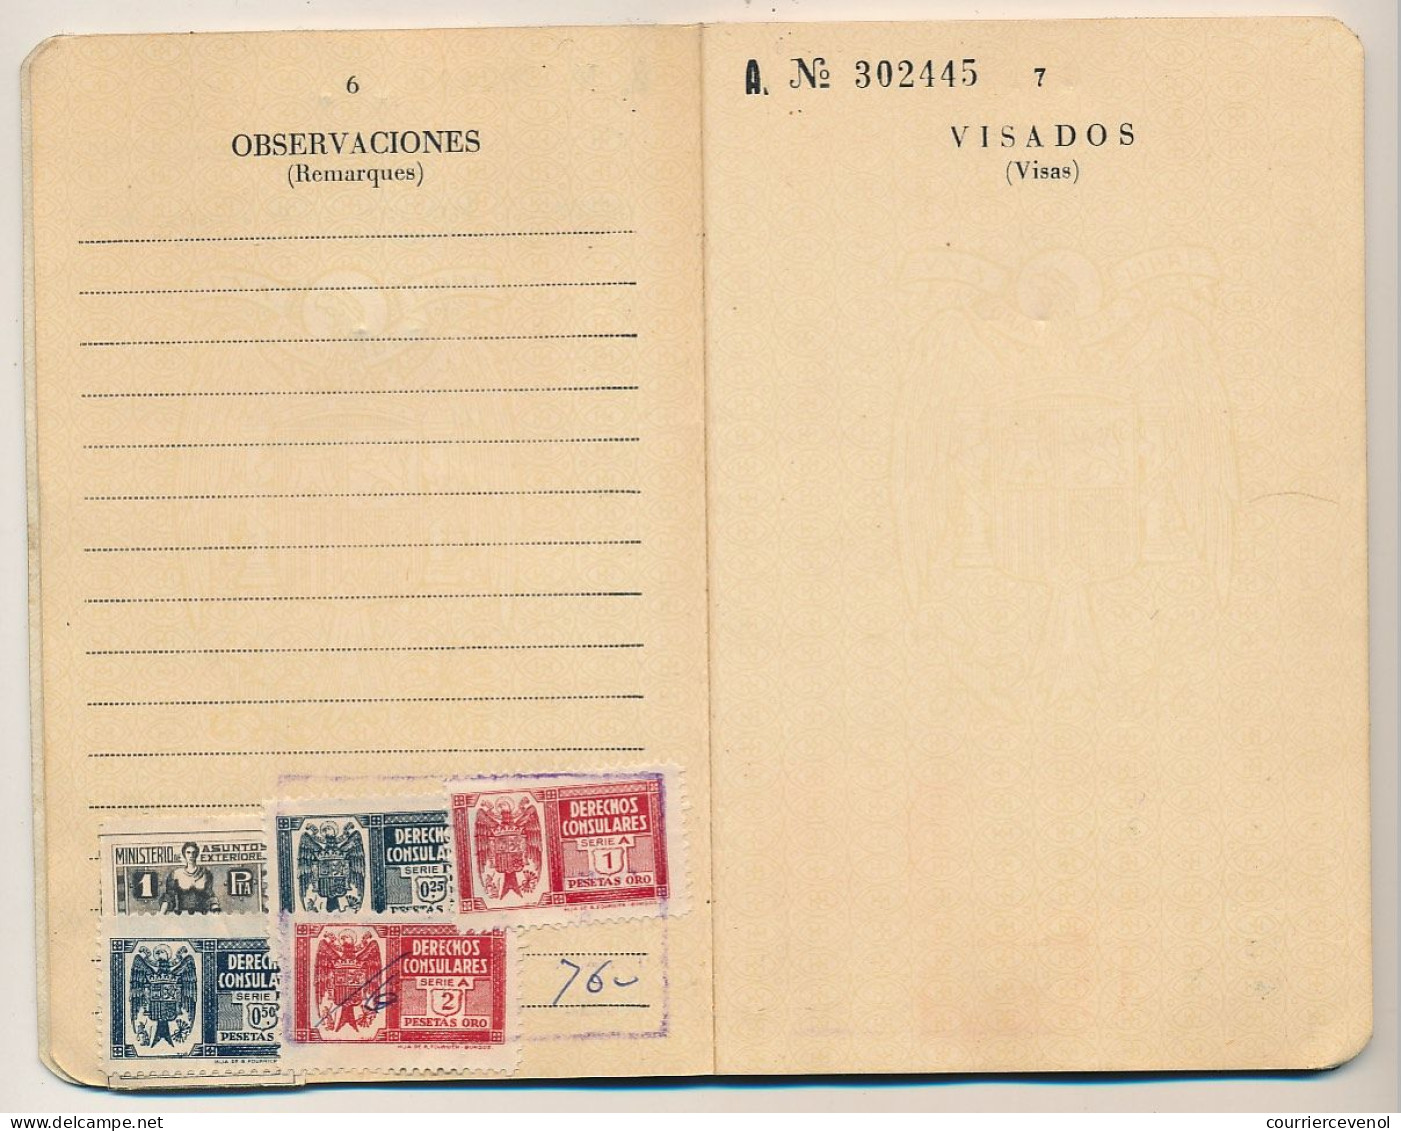 ESPAGNE / ALGERIE - Certificat de Nationalité et Passeport espagnols, délivrés à ORAN (Algérie) 1962